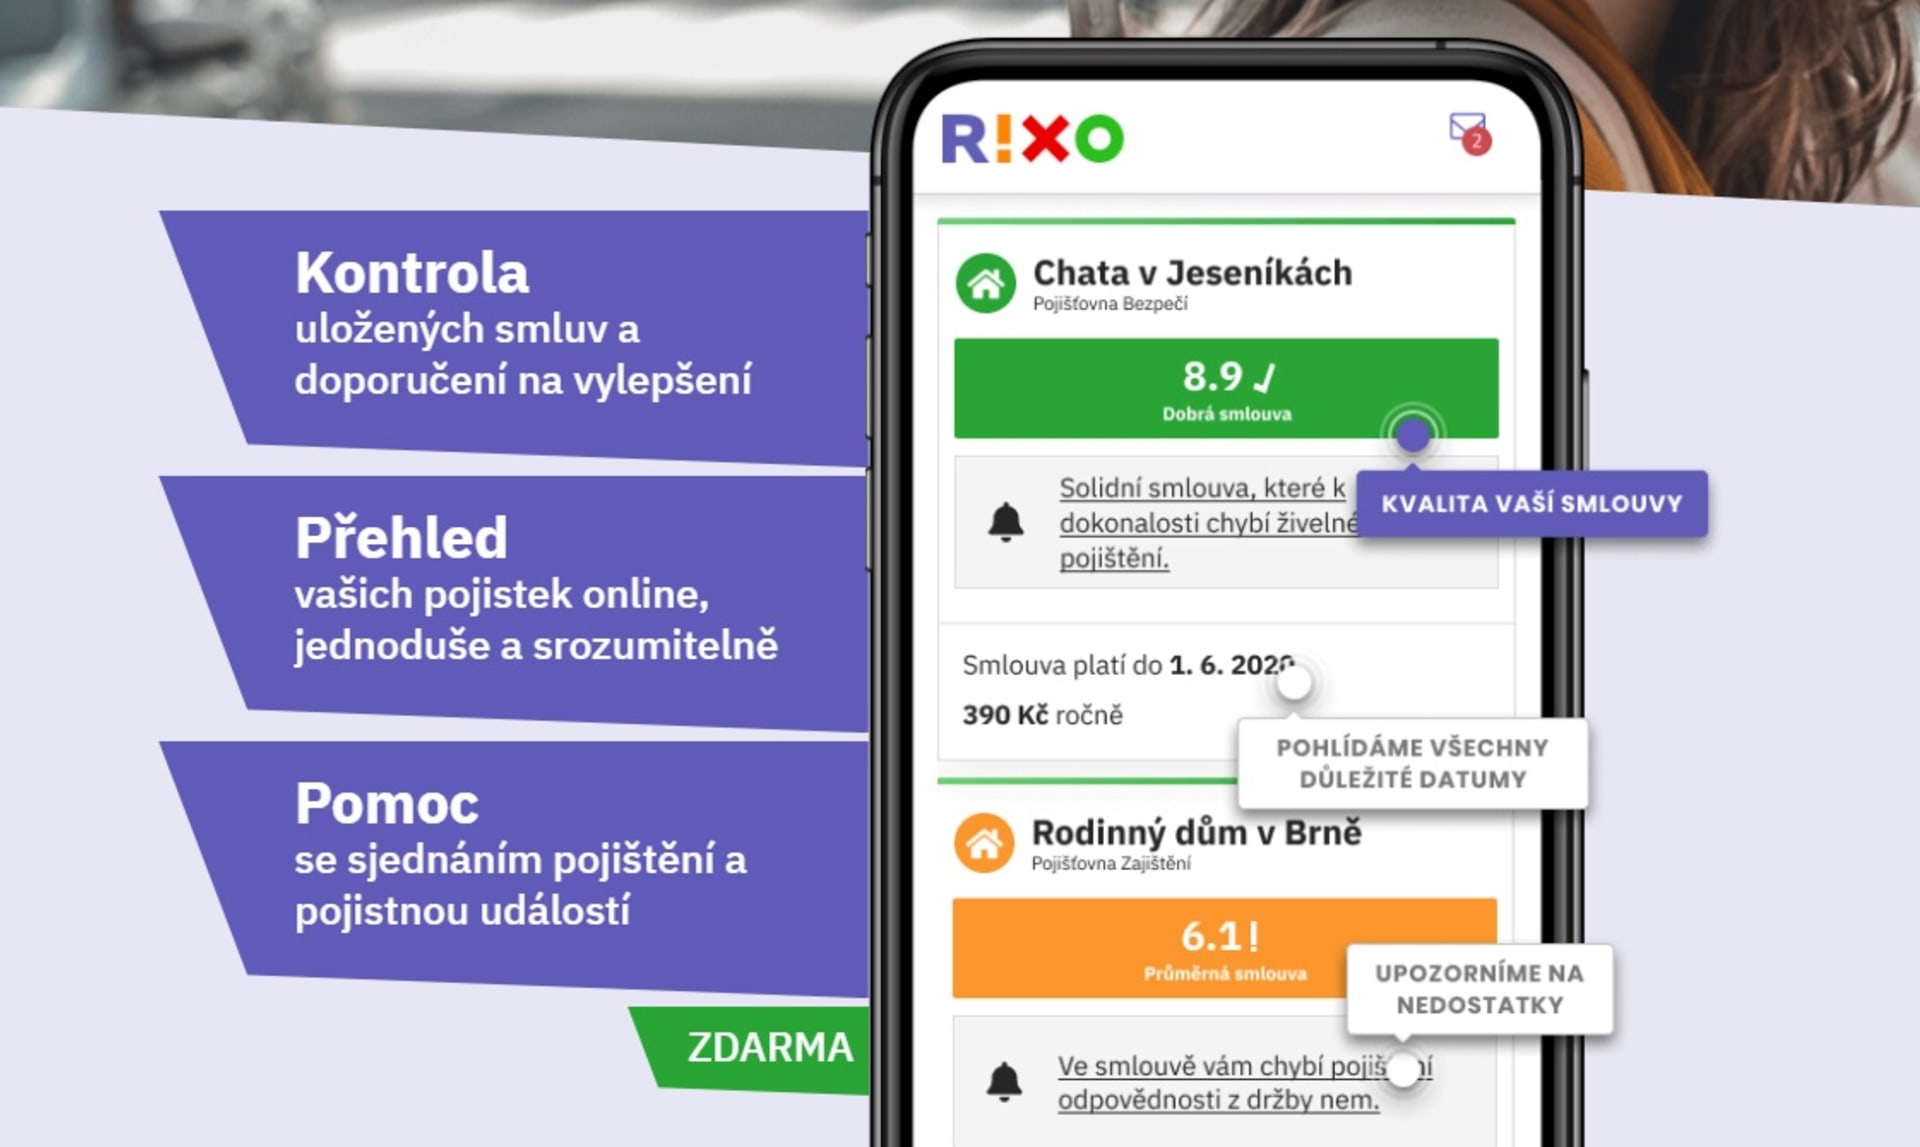 Co vše nabízí bezplatná služba RIXO.cz